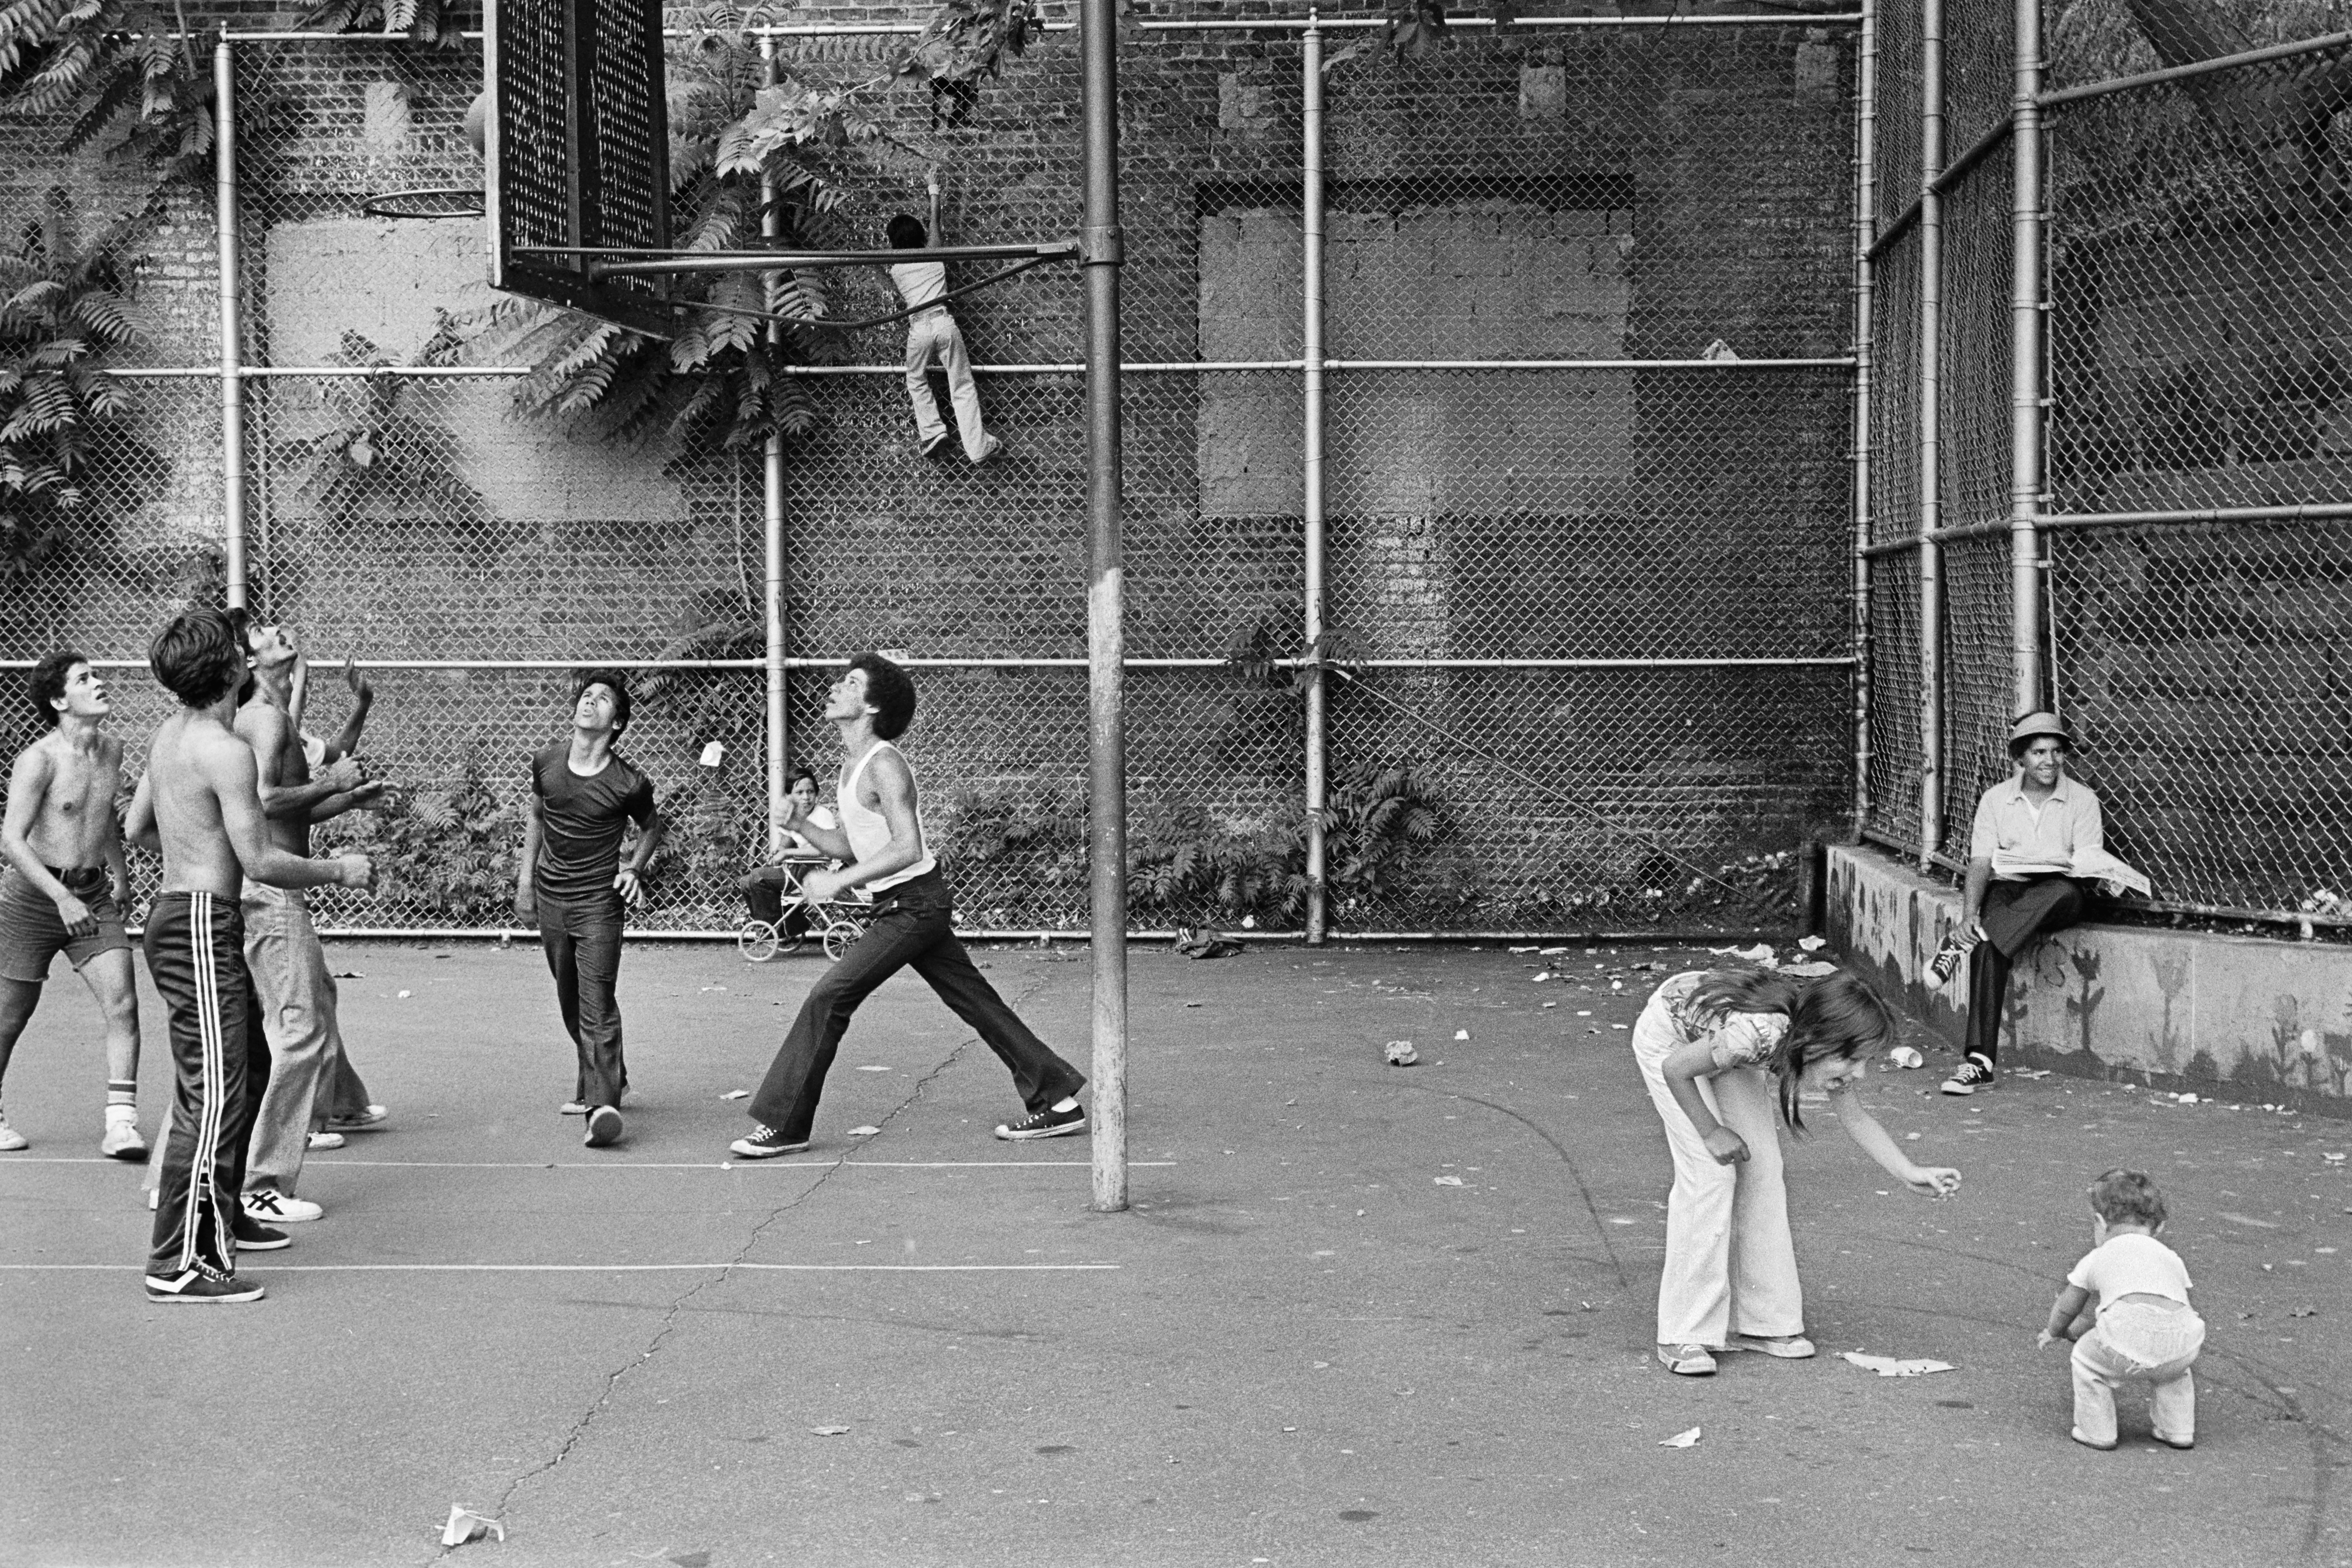 Fotografía de personas jugando baloncesto en una cancha de baloncesto entre dos edificios, una mujer y un niño delante